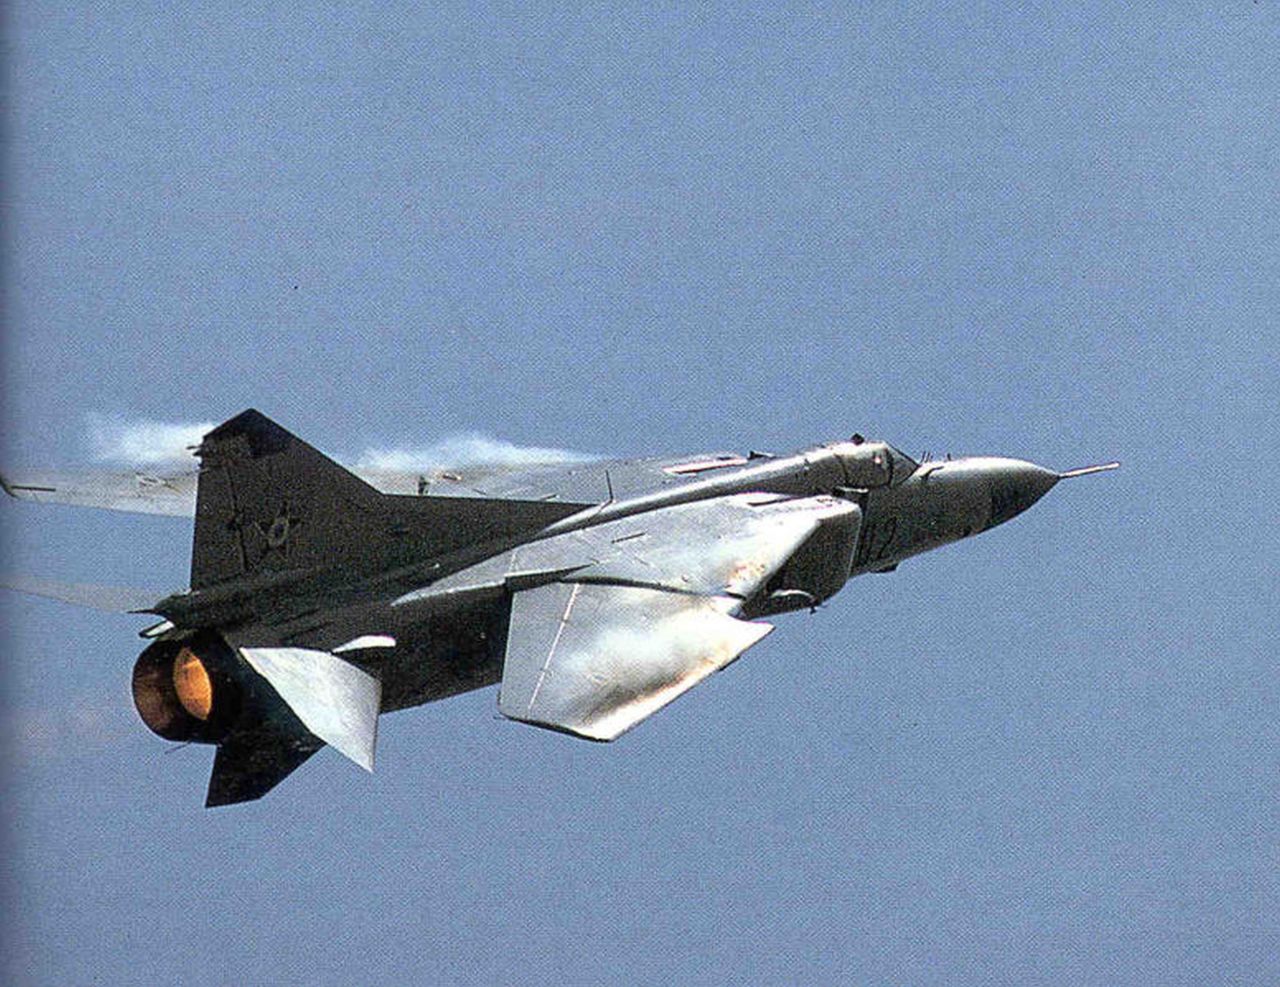 MiG-23 podczas lotu ze złożonymi skrzydłami (na zdjęciu samolot w barwach węgierskich)